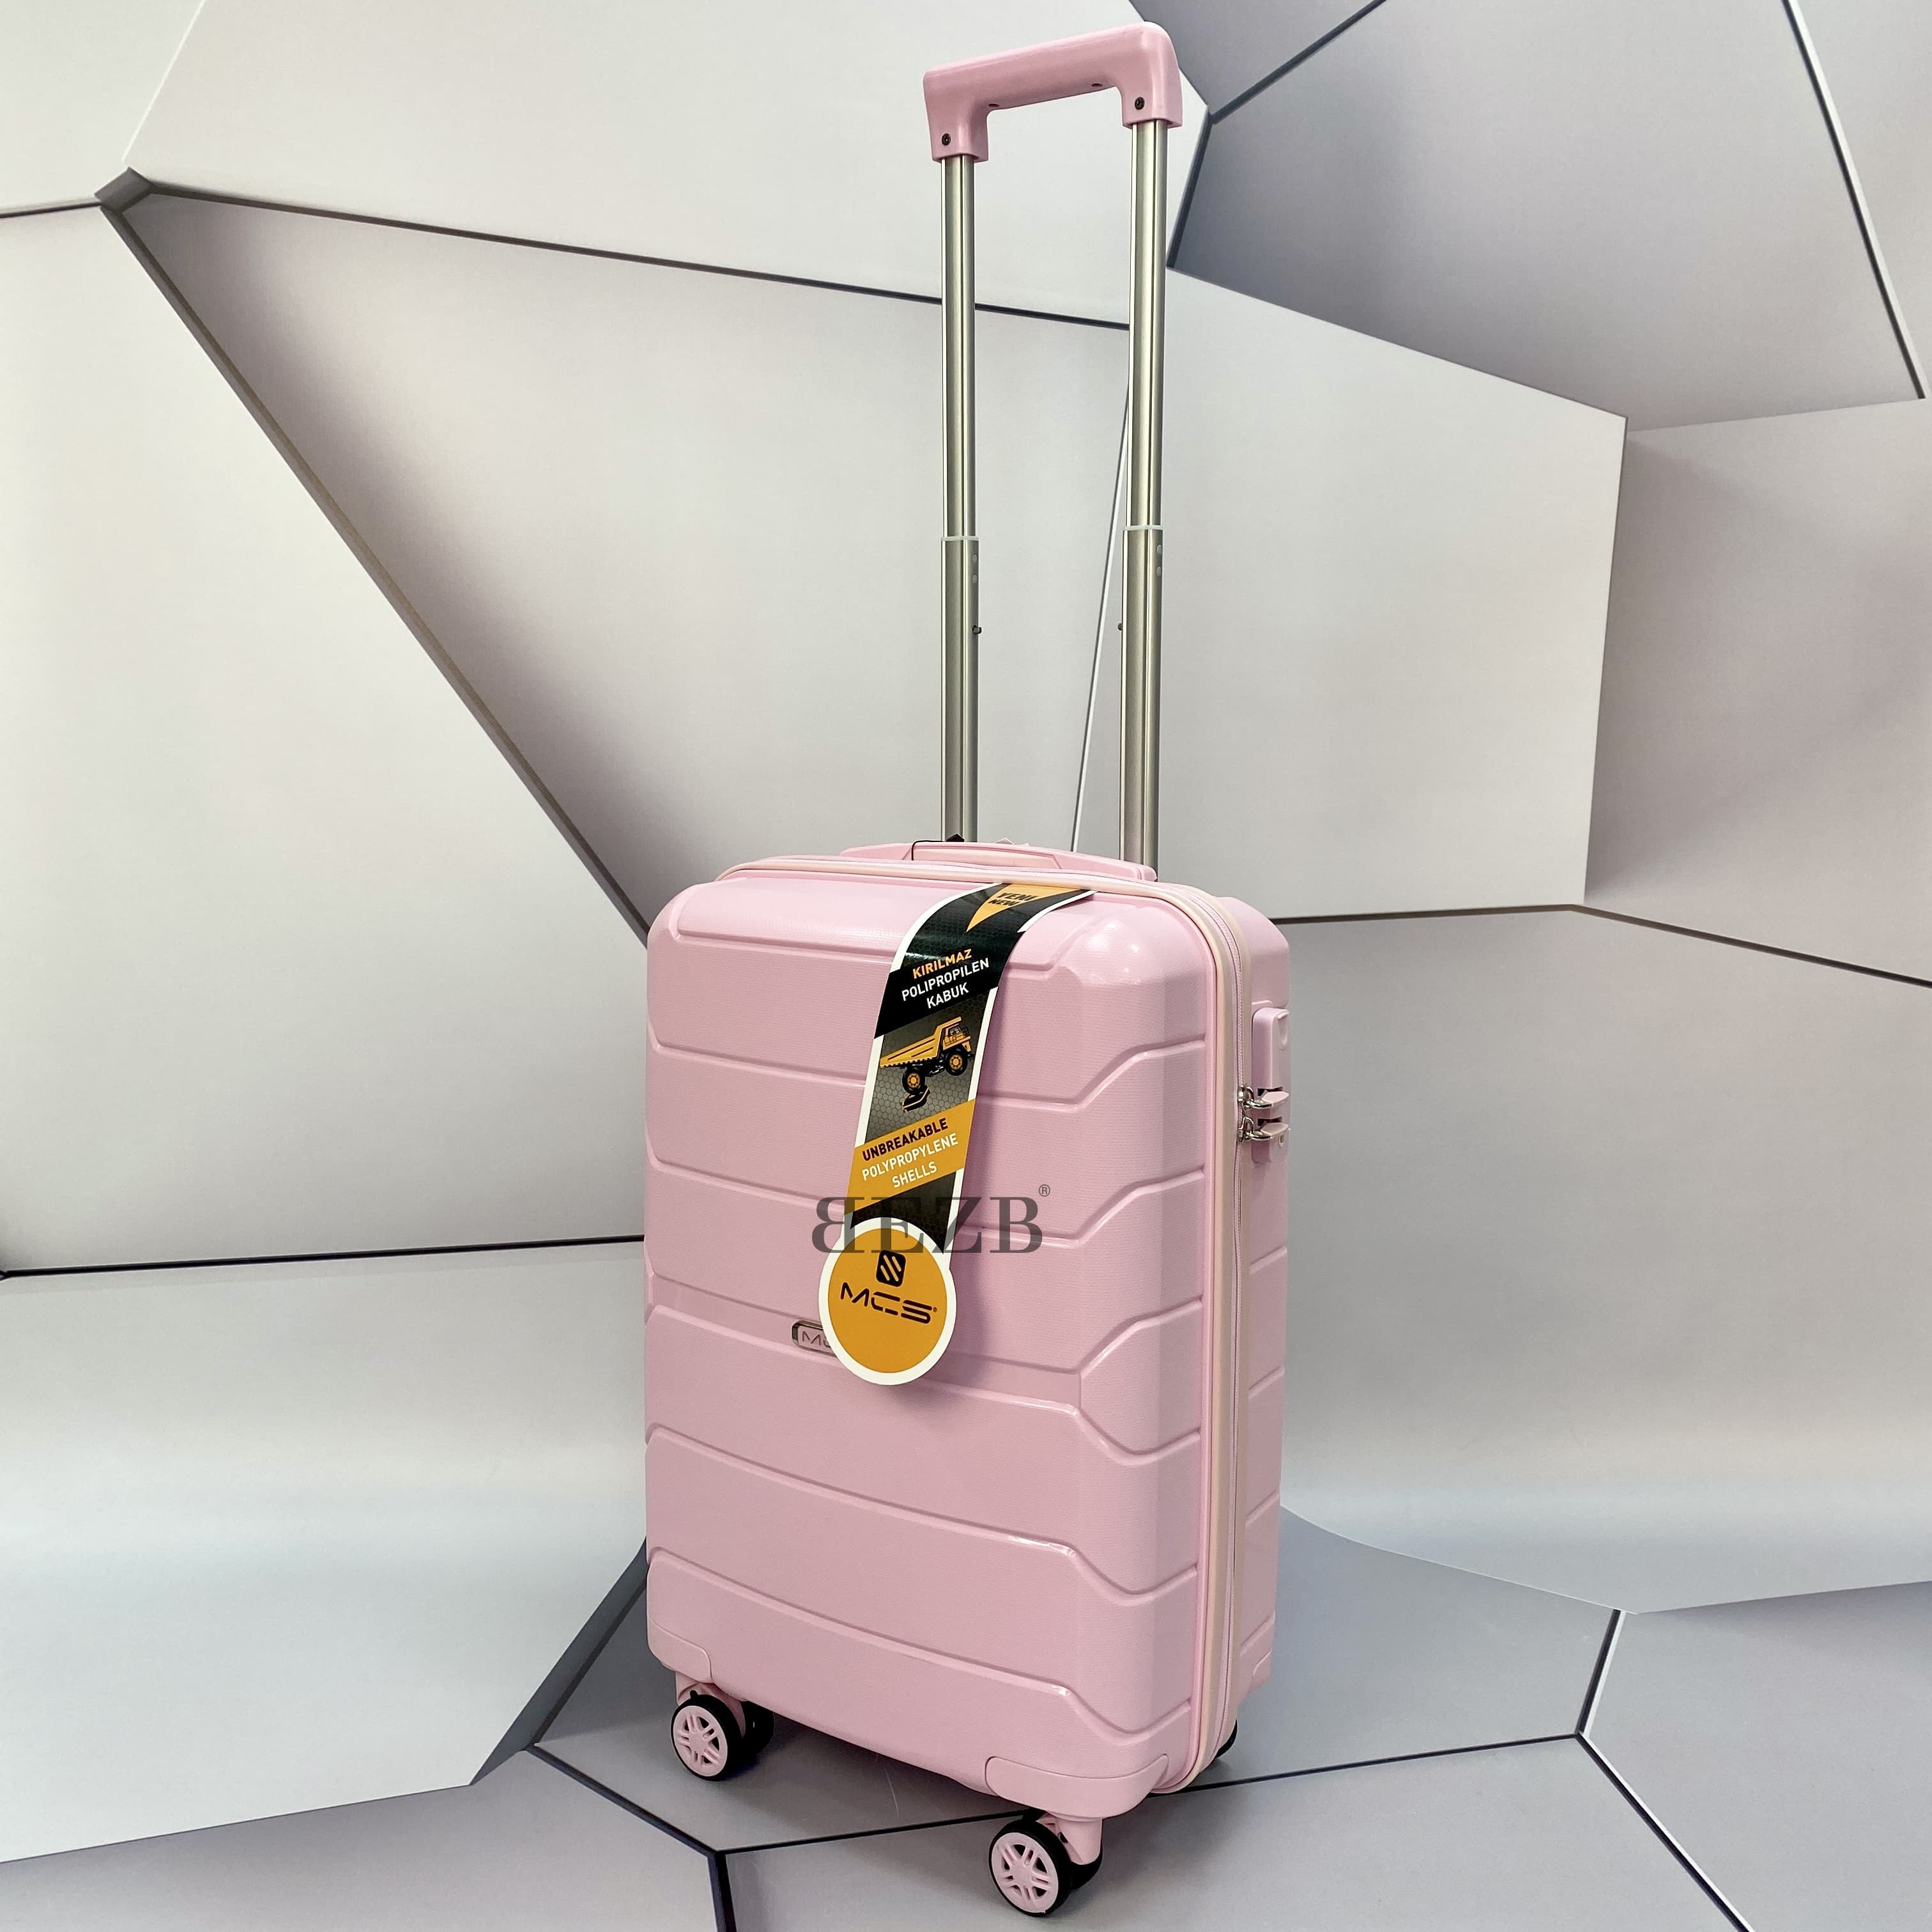 Маленький чемодан для ручьной клади из полипропилена MCS V366 S POWDER! Для 8-10 кг! - 6